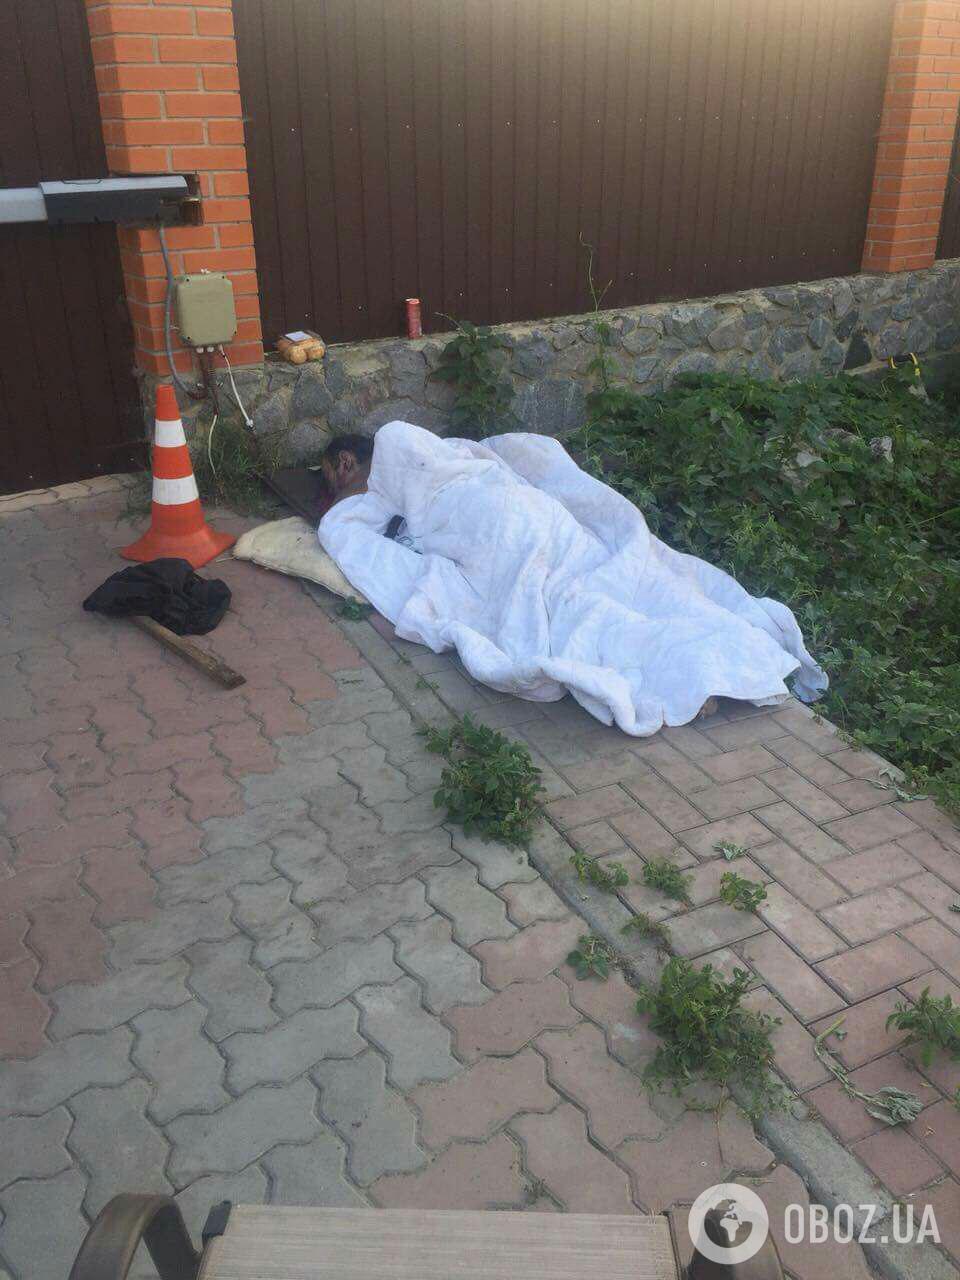 У Сумах застрелили екс-чиновника: перші криваві фото з місця вбивства, 18+